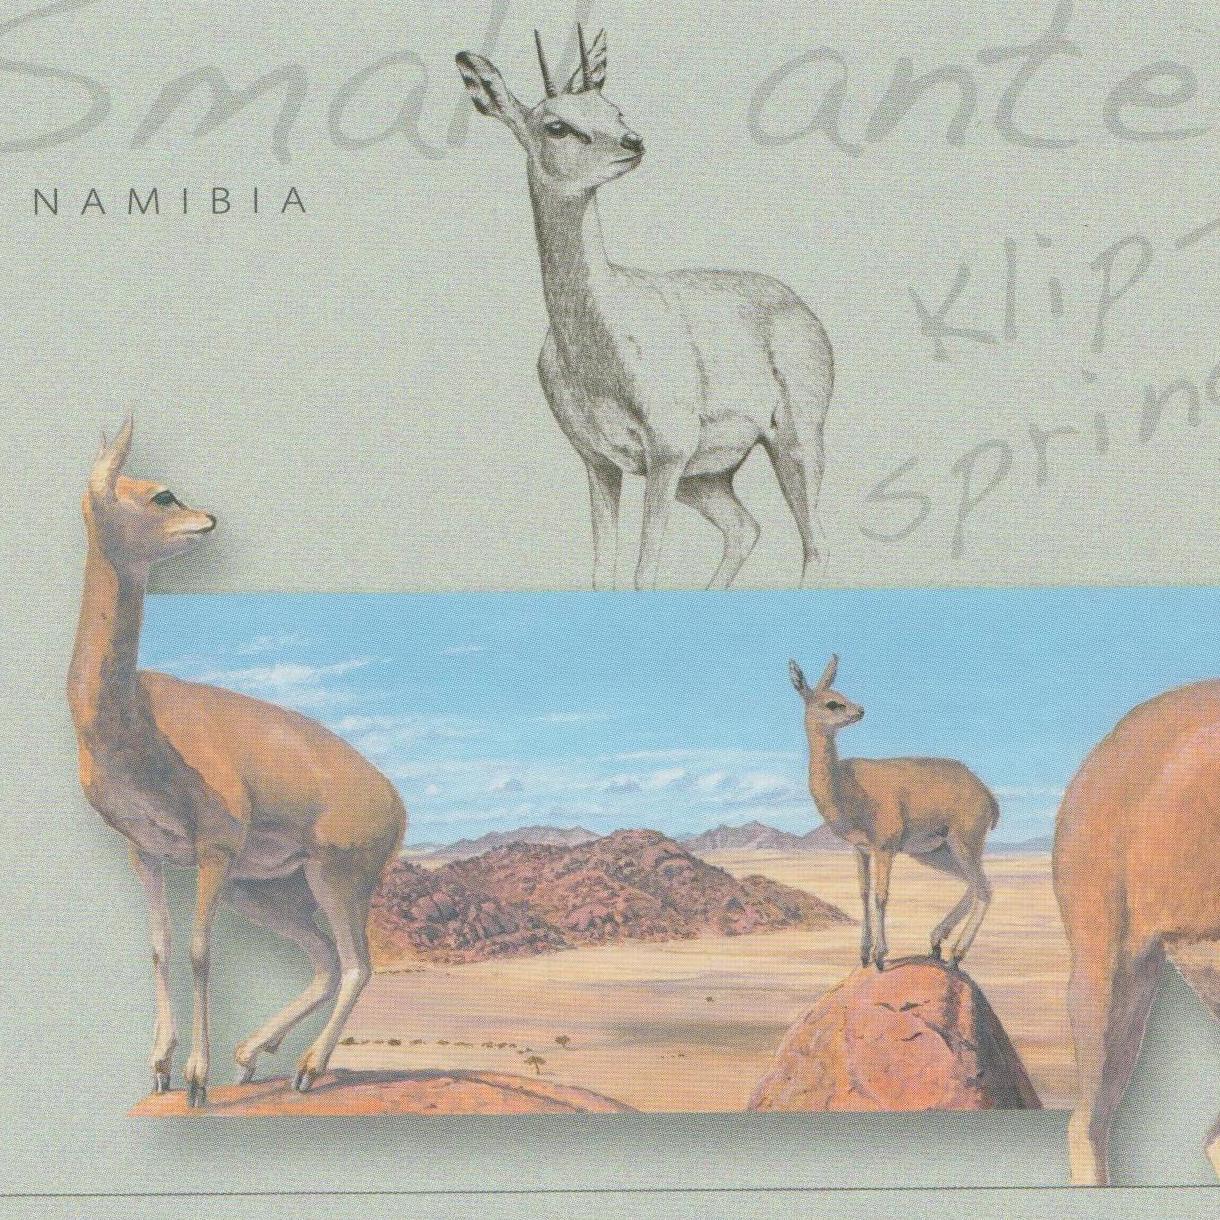 Small Antelopes, Springbok